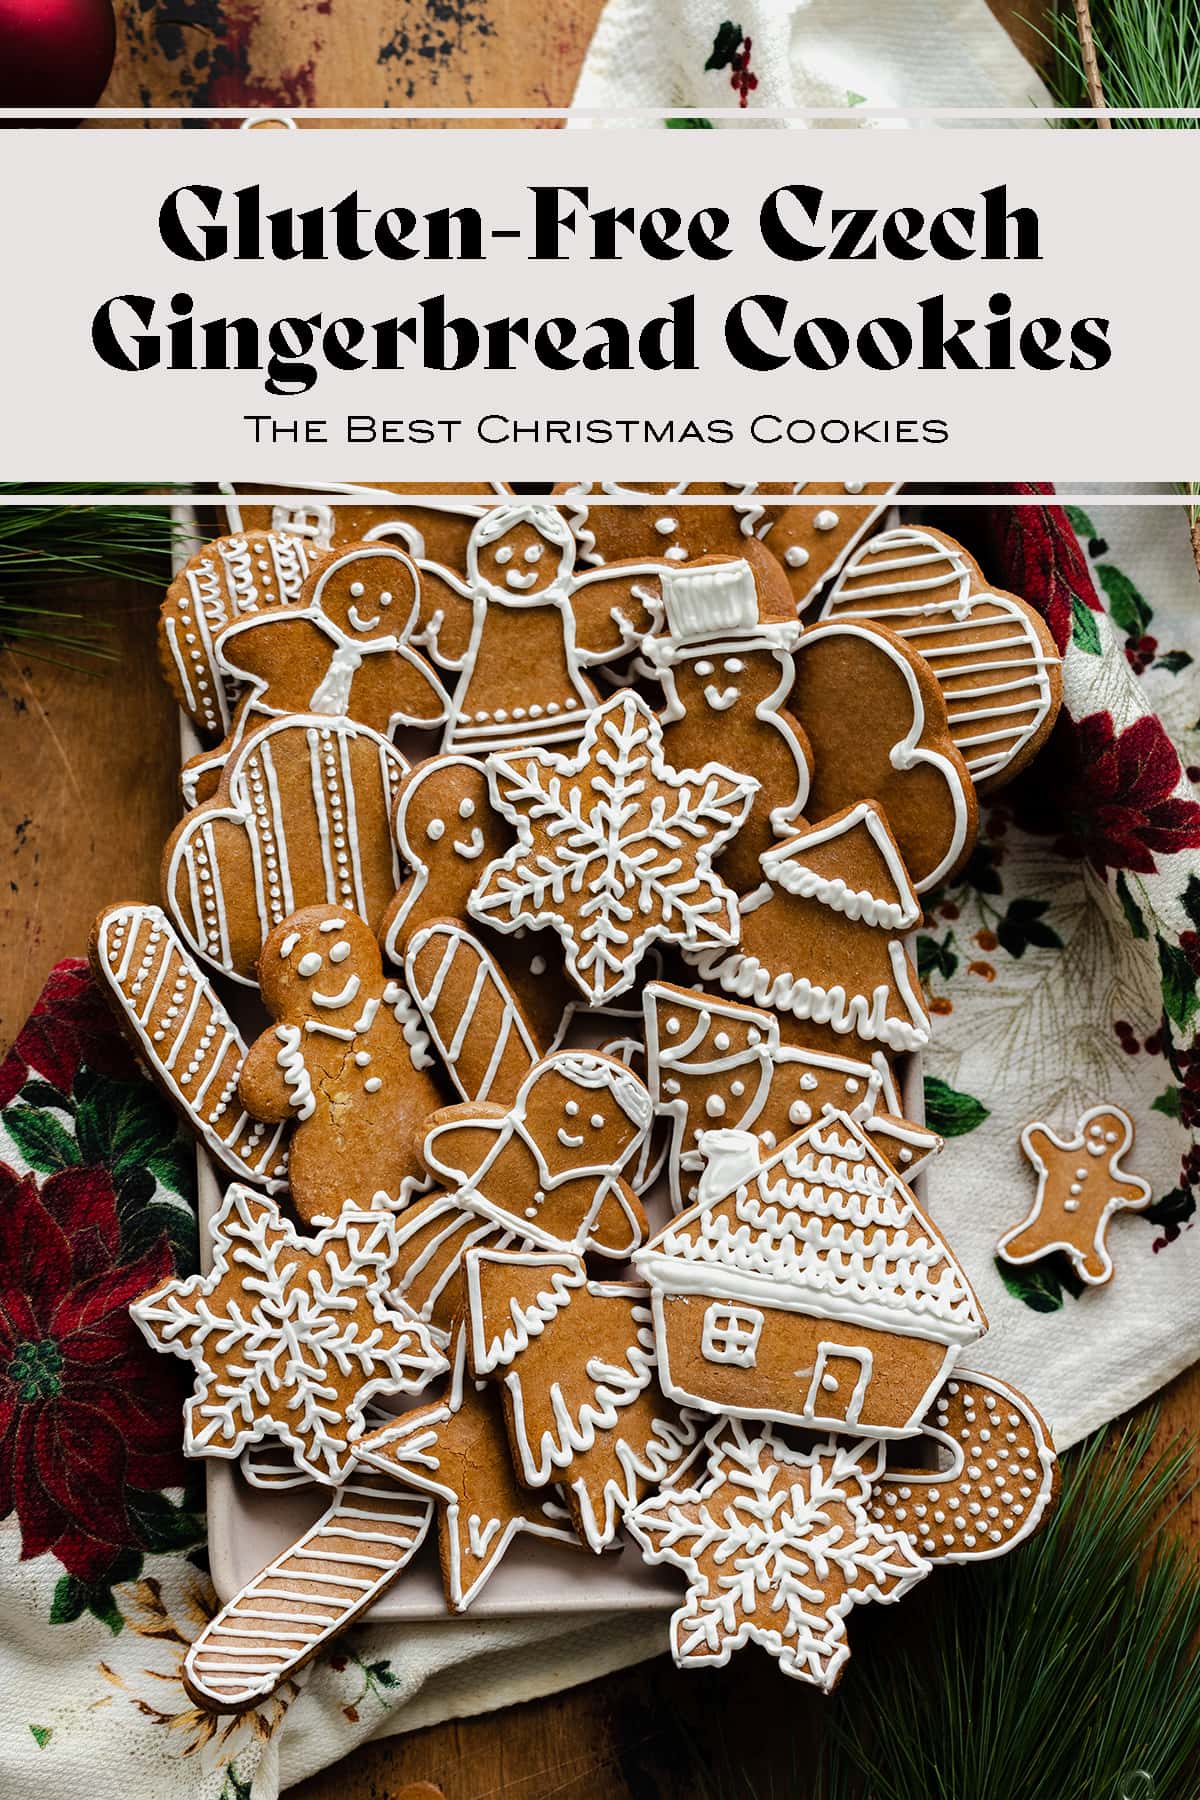 Gluten-Free Czech Gingerbread Cookies